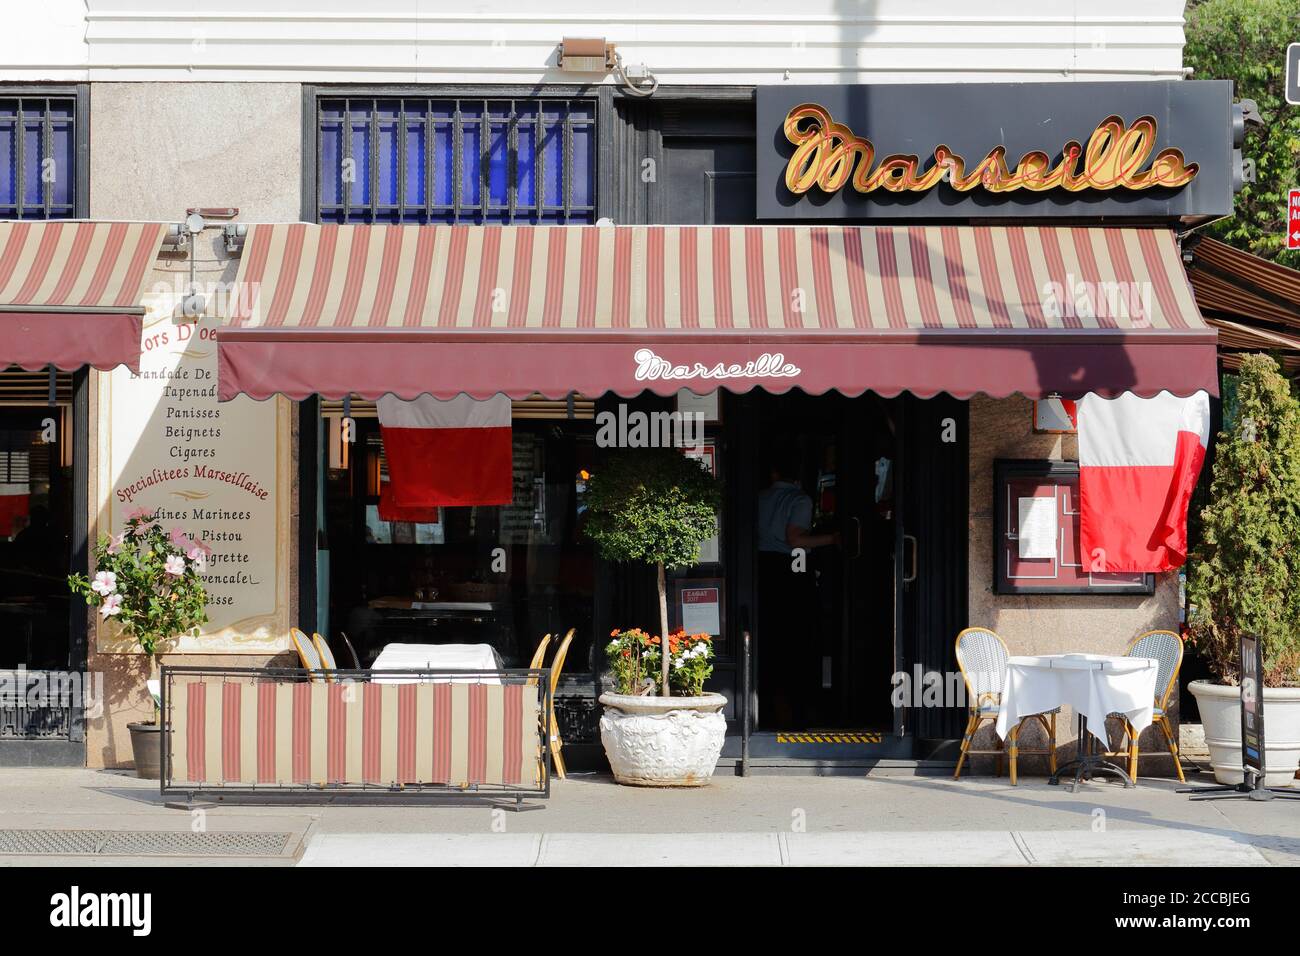 Marseille, 630 Ninth Ave, New York, NY. Façade extérieure d'une brasserie française dans le quartier des théâtres de Manhattan, quartier Hells Kitchen. Banque D'Images